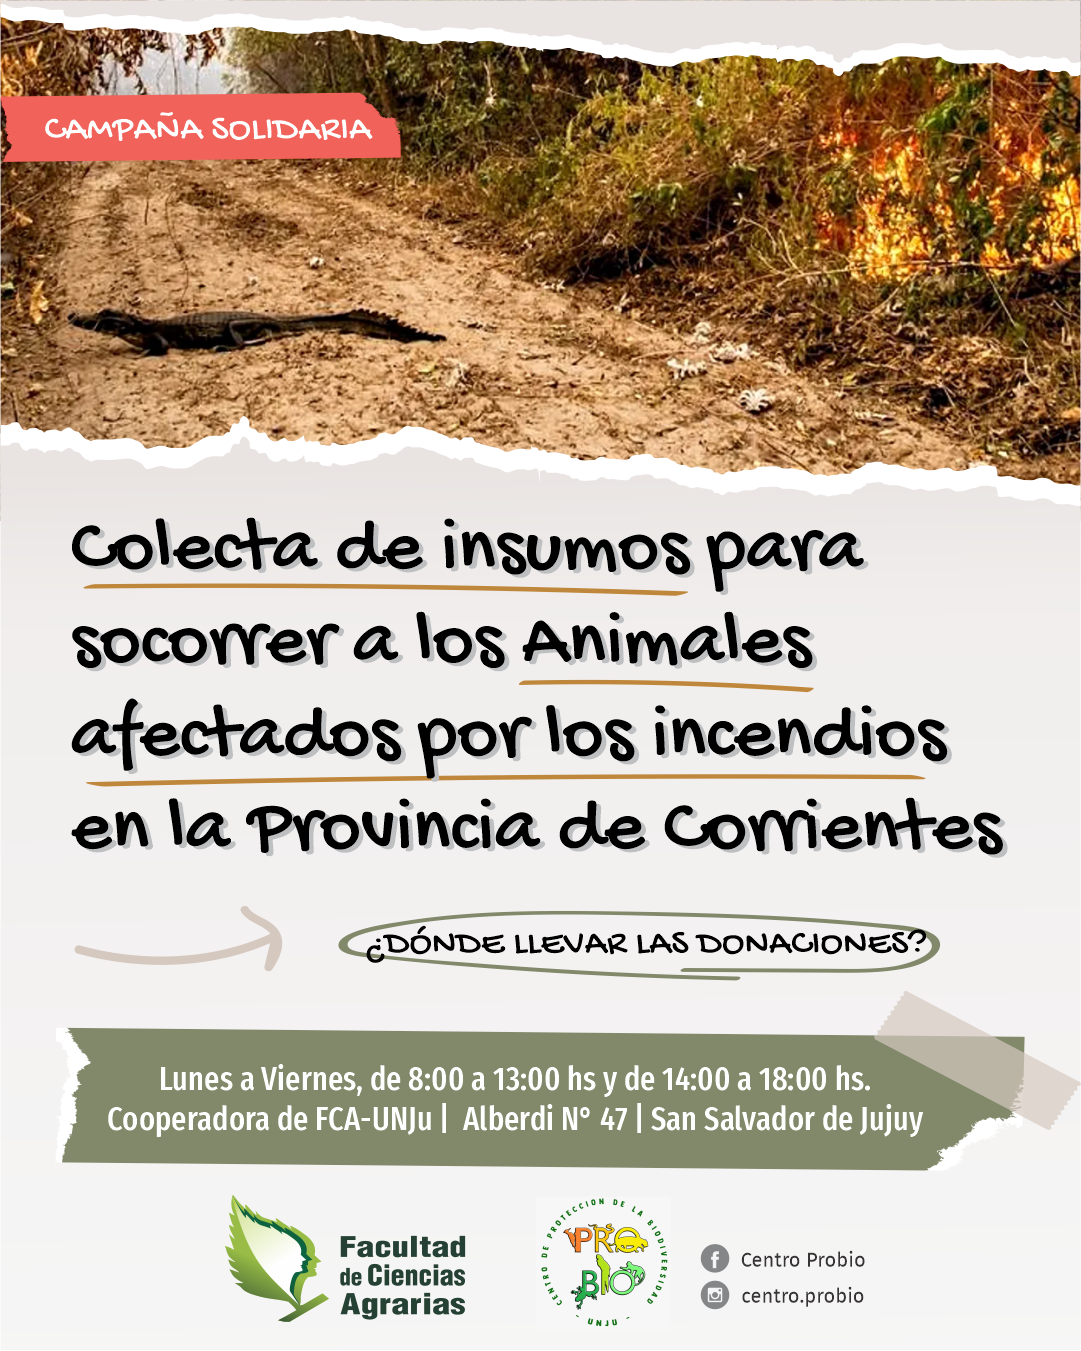 Colecta de insumos para socorrer a los animales afectados por los incendios en Corrientes